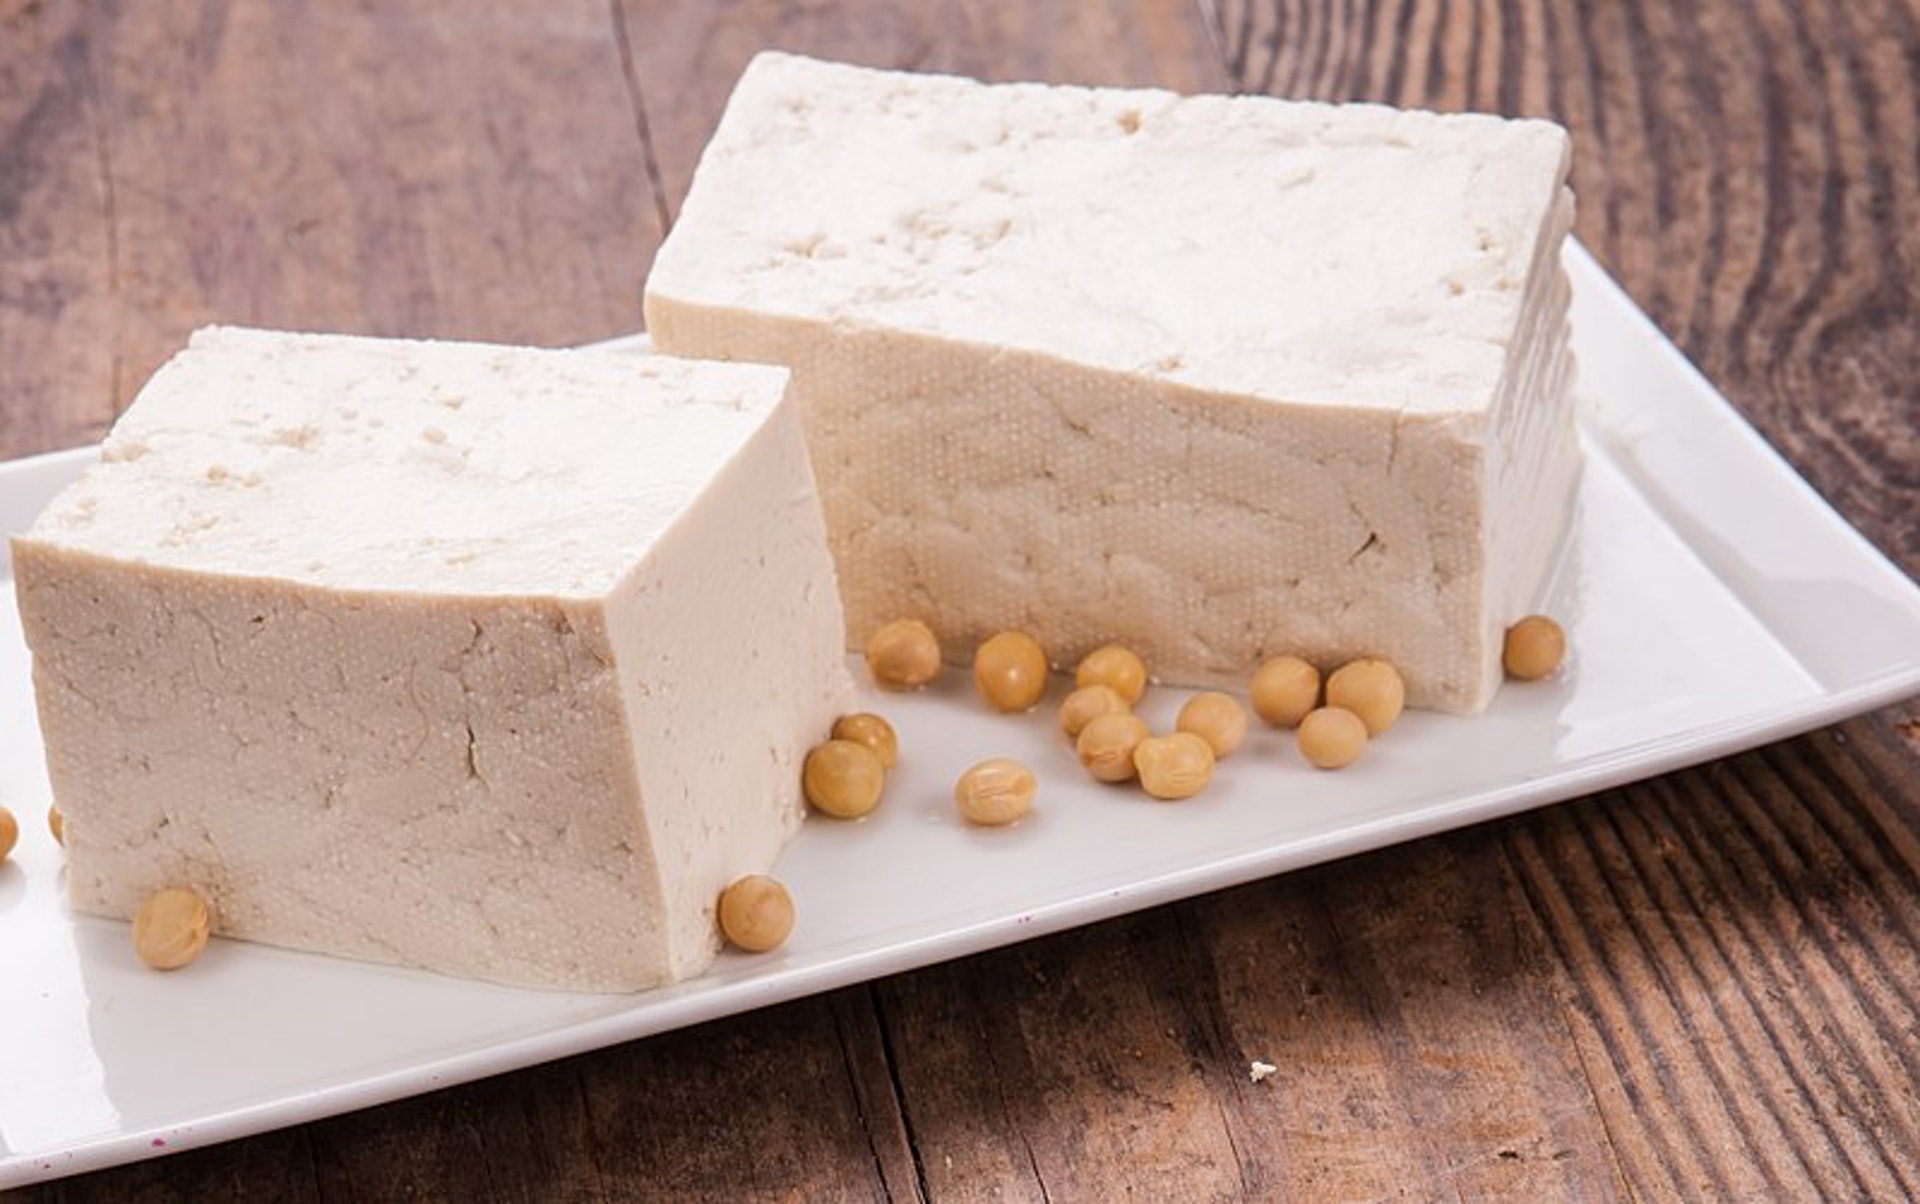 硬豆腐是黃豆製品，清熱健脾，並屬高鈣食物，為小孩骨骼提供營養基礎，加點生薑，除可辟魚腥外，更有辛溫生發的作用。（維基百科）